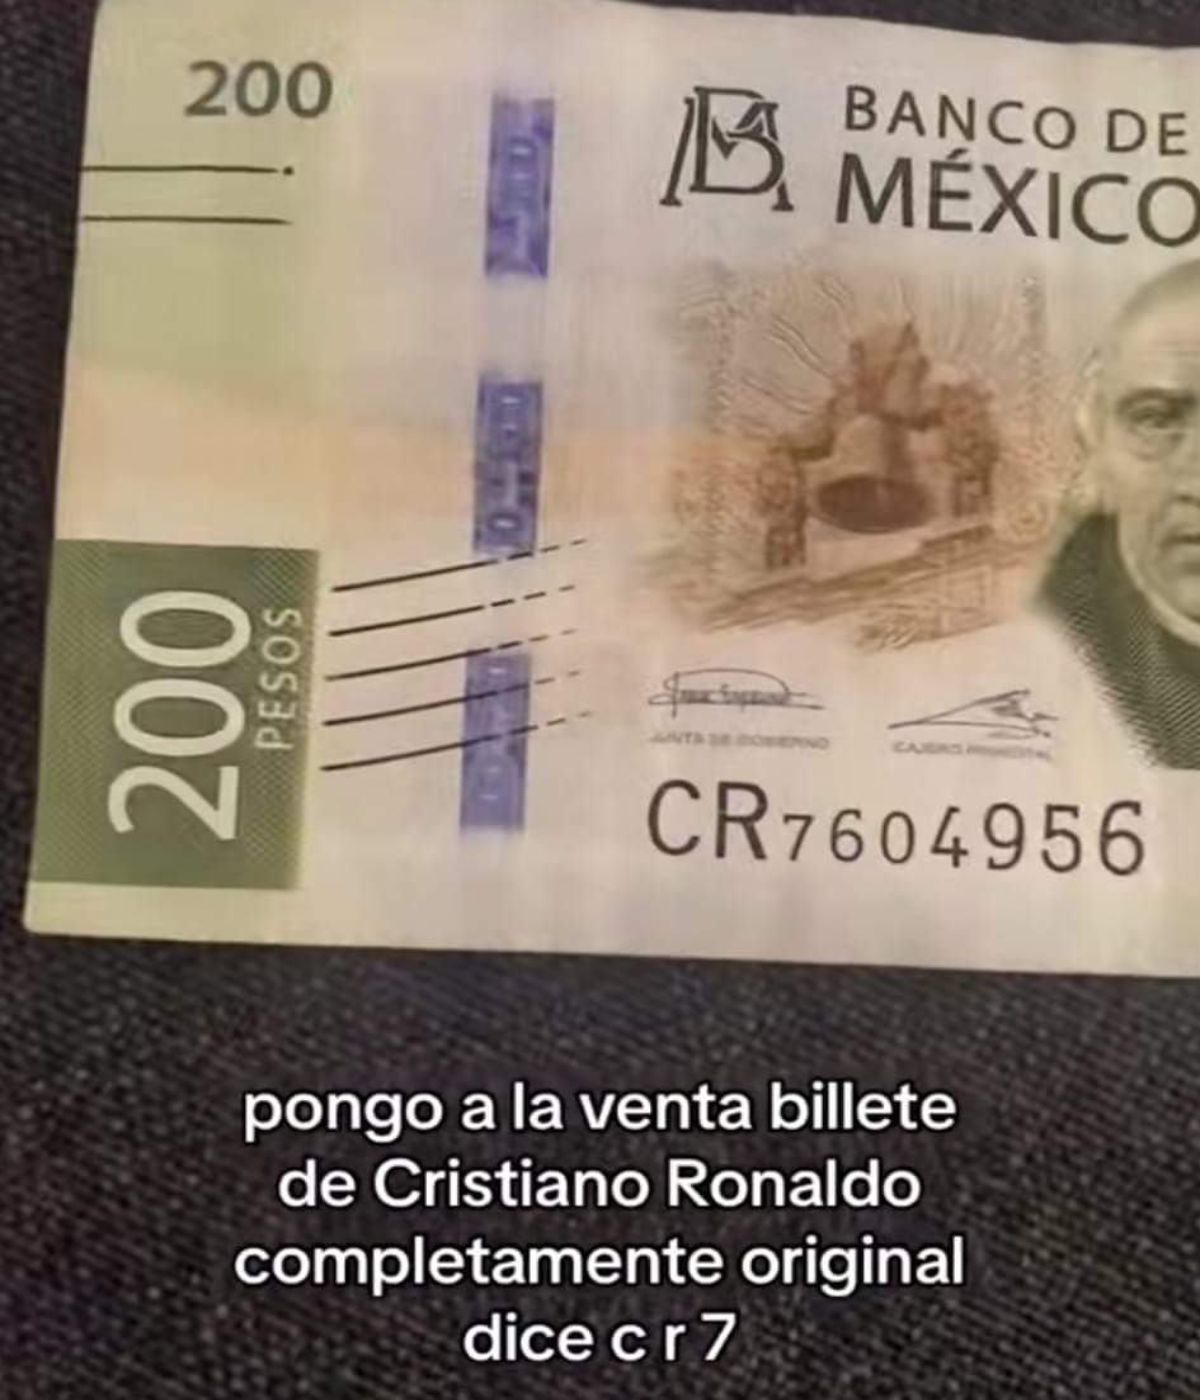 Publicidad del billete de Cristiano Ronaldo a la venta